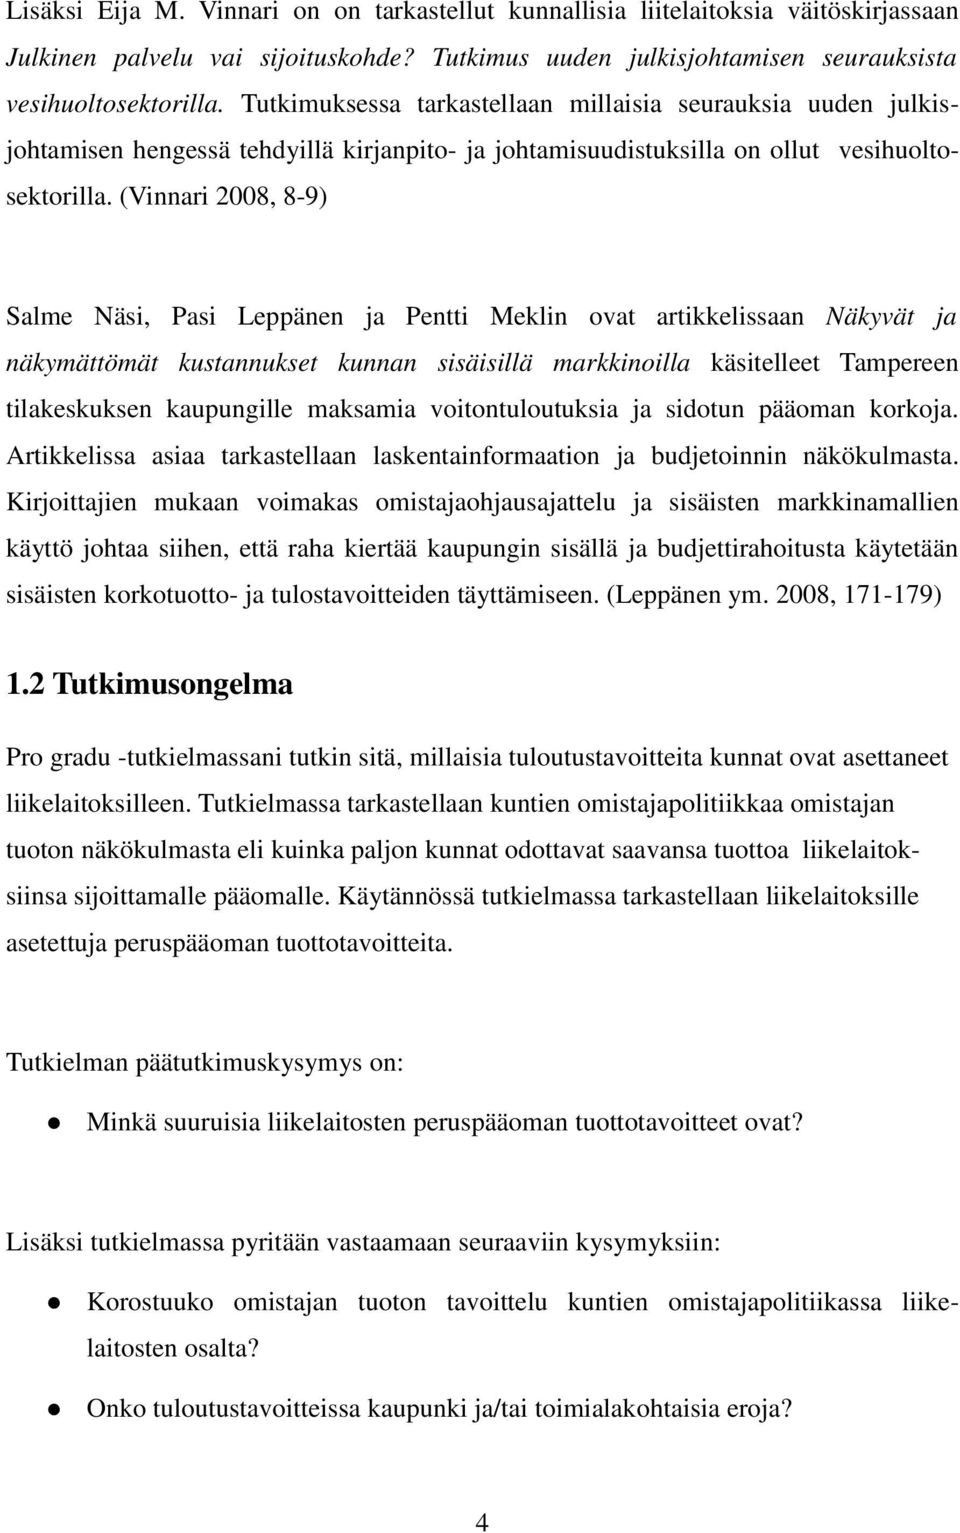 (Vinnari 2008, 8-9) Salme Näsi, Pasi Leppänen ja Pentti Meklin ovat artikkelissaan Näkyvät ja näkymättömät kustannukset kunnan sisäisillä markkinoilla käsitelleet Tampereen tilakeskuksen kaupungille